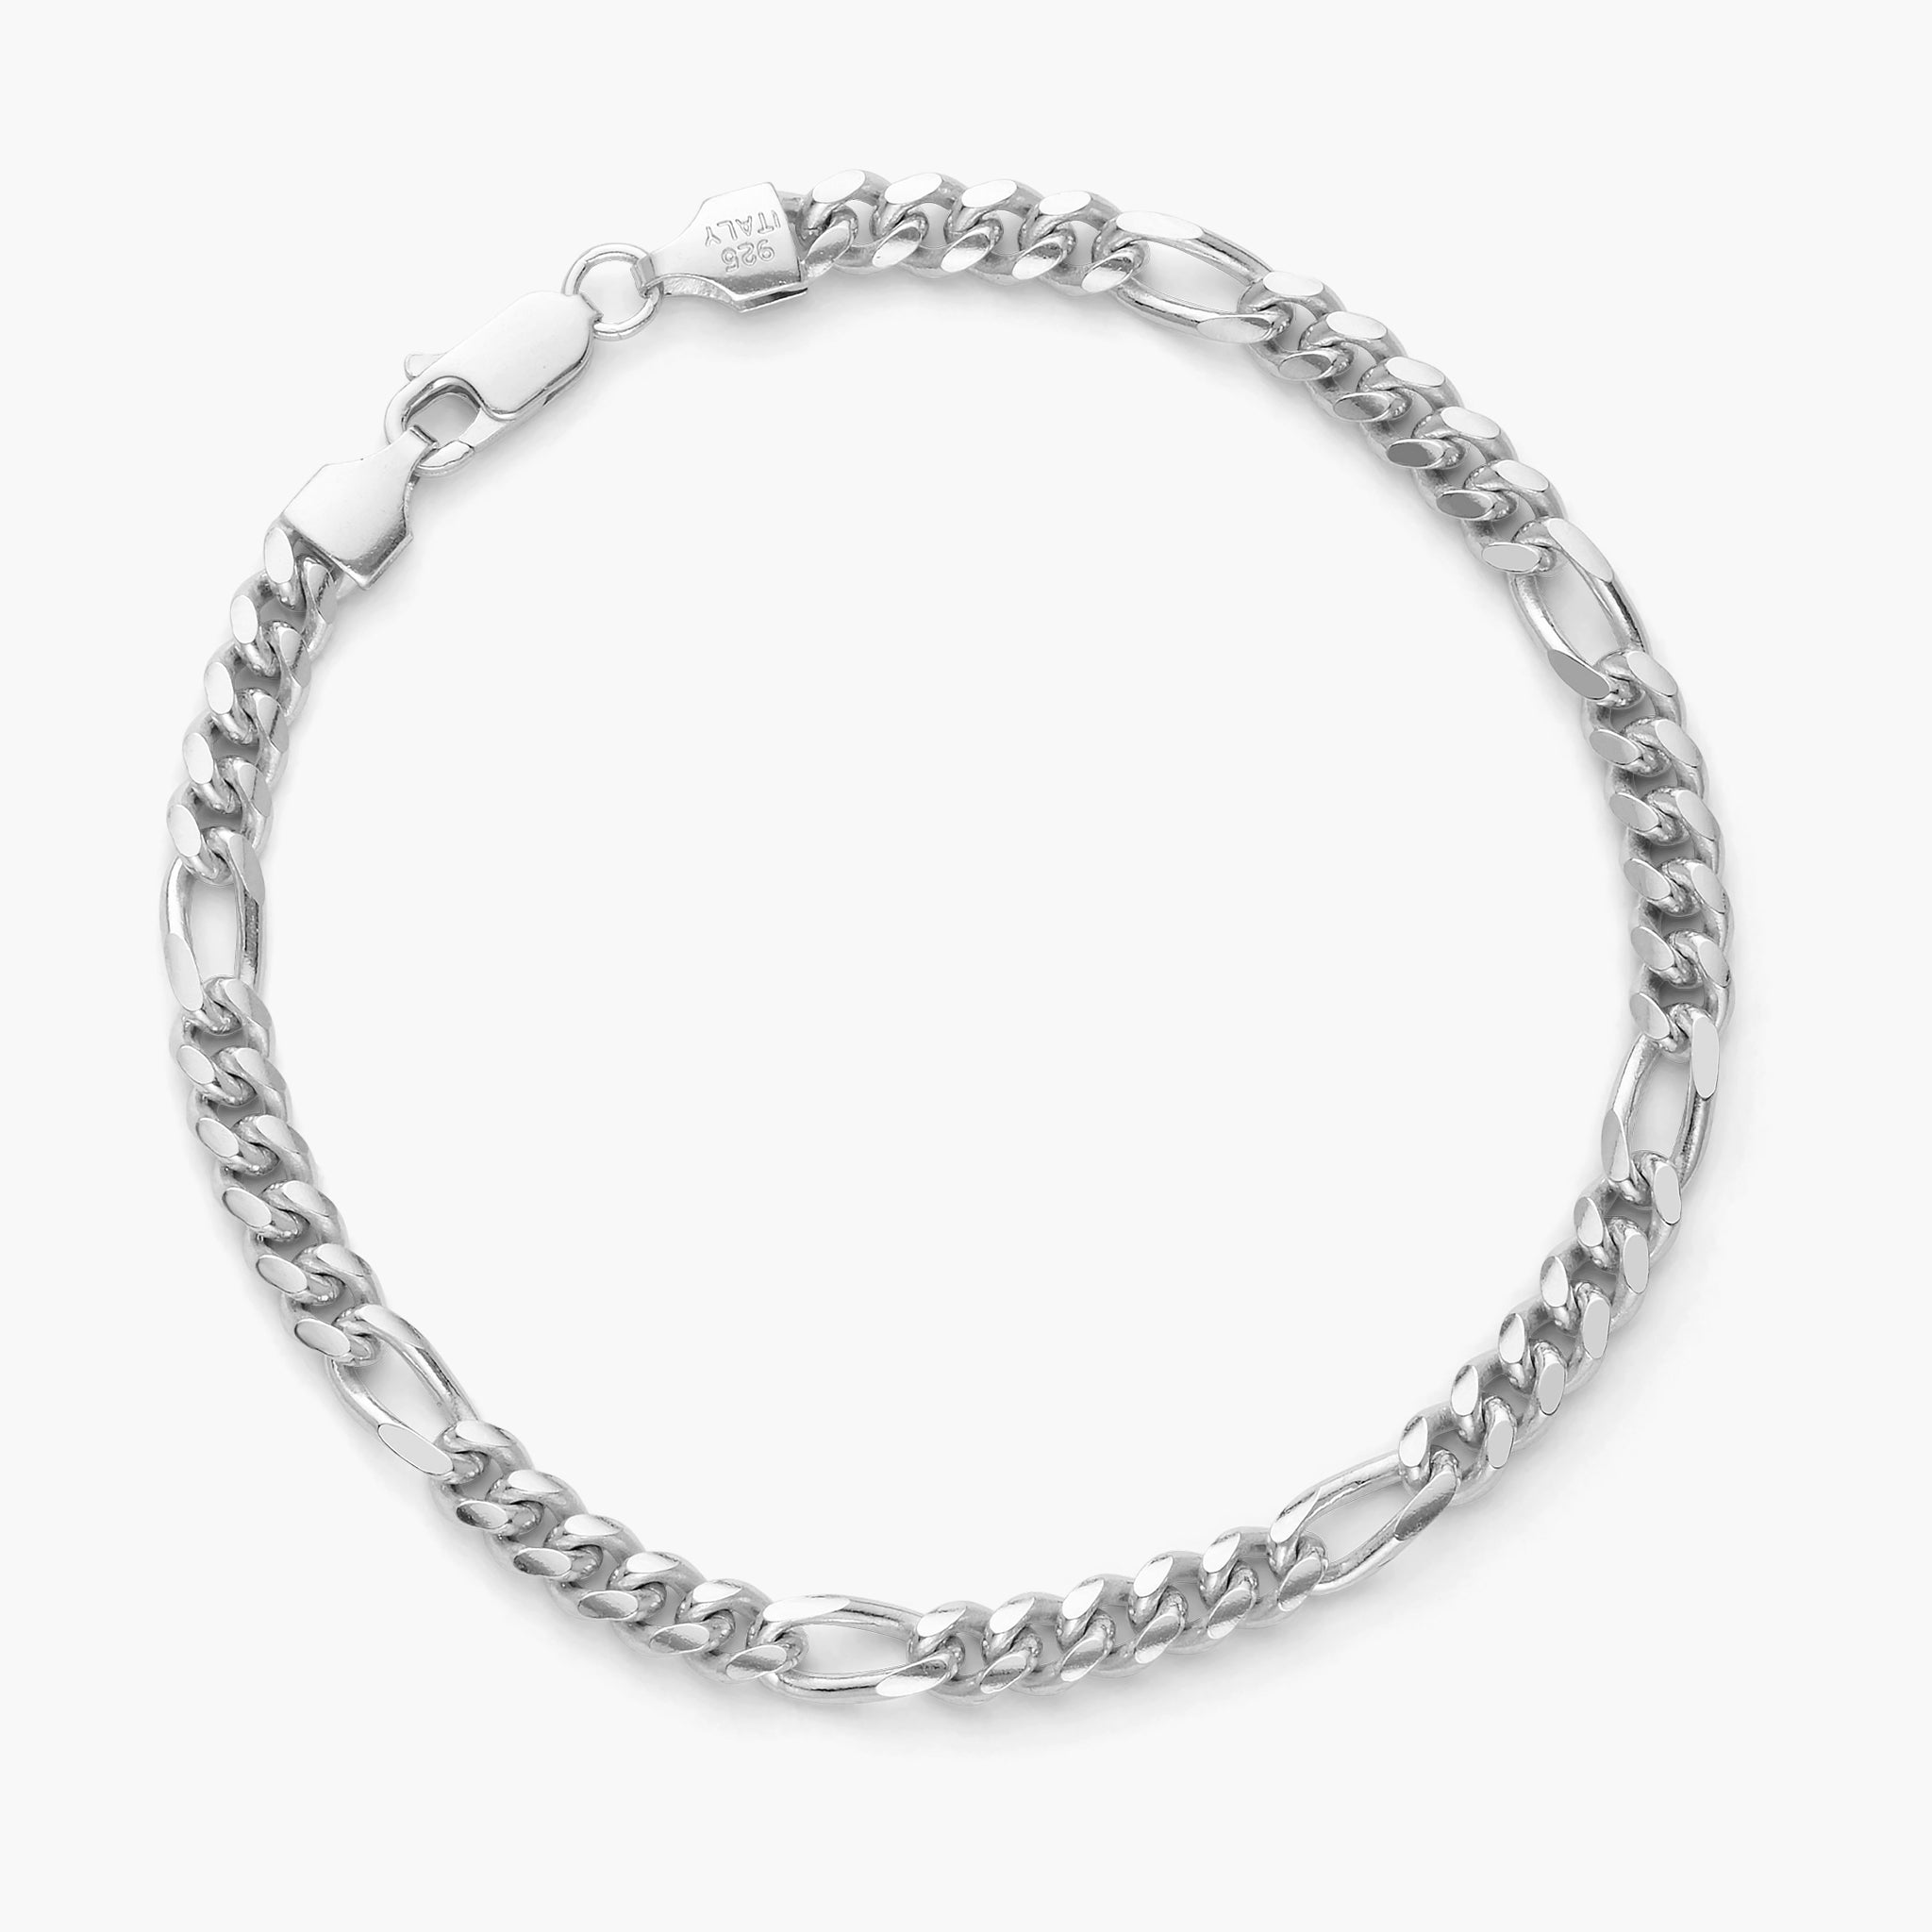 JAXXON Heritage Charm Silver Bracelet | 7.5/8.5